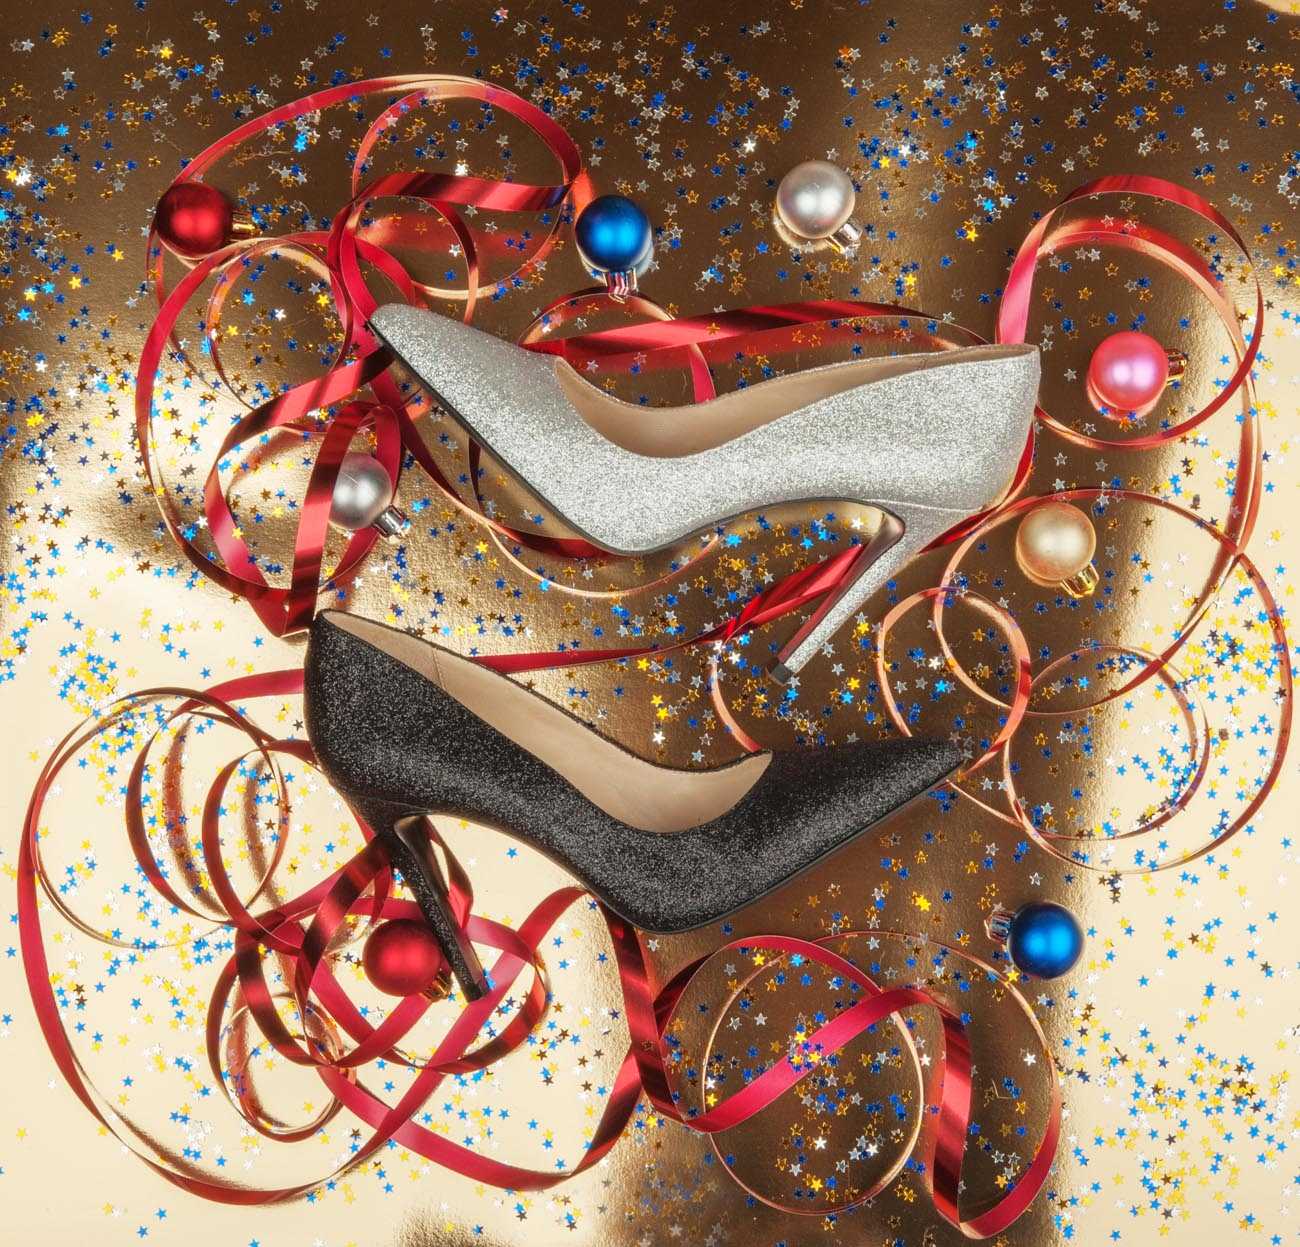 Вечерние туфли 2022 года отличаются яркими нарядными и праздничными моделями, которые идеально подойдут даже для празднования Нового года Каковы особенности, преимущества и правила выбора вечерних туфель